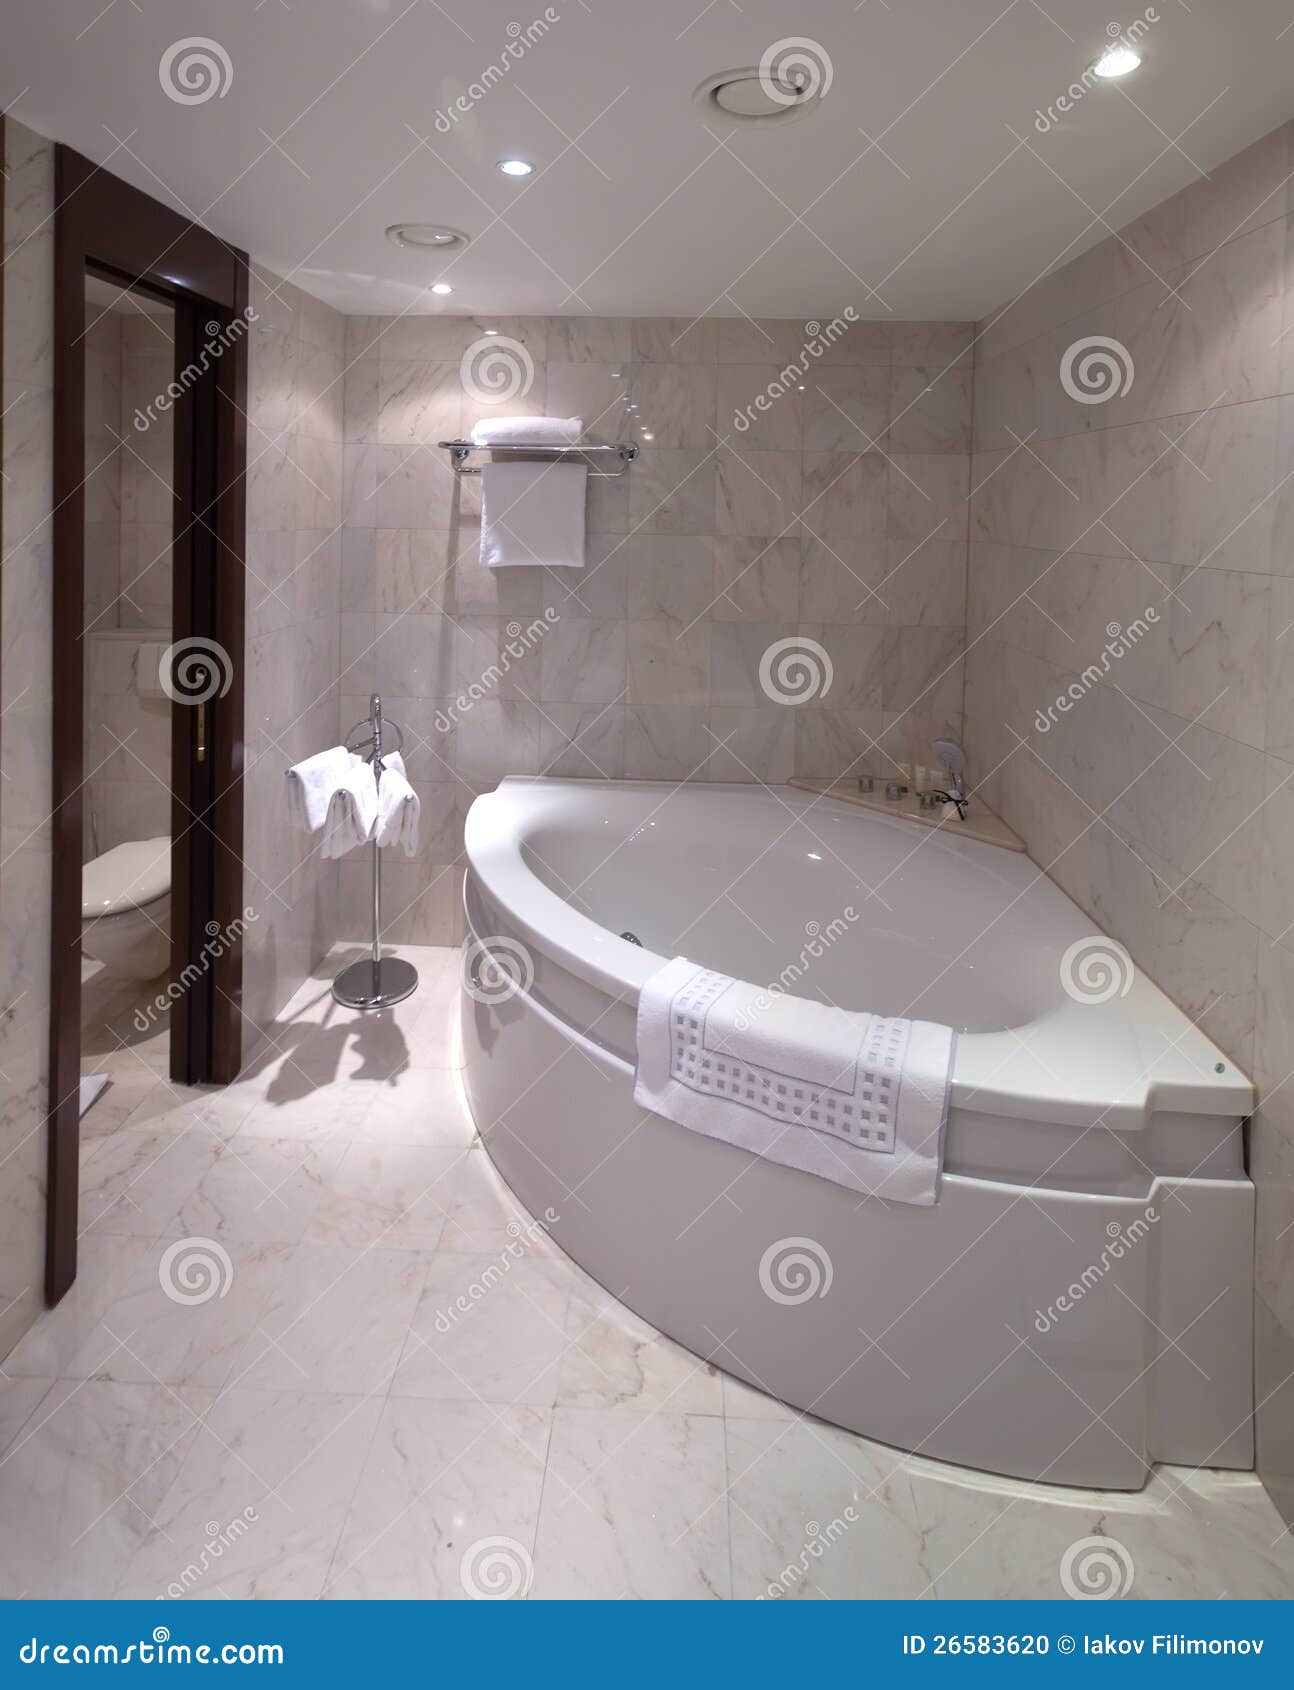 Угловая ванна в интерьере ванной